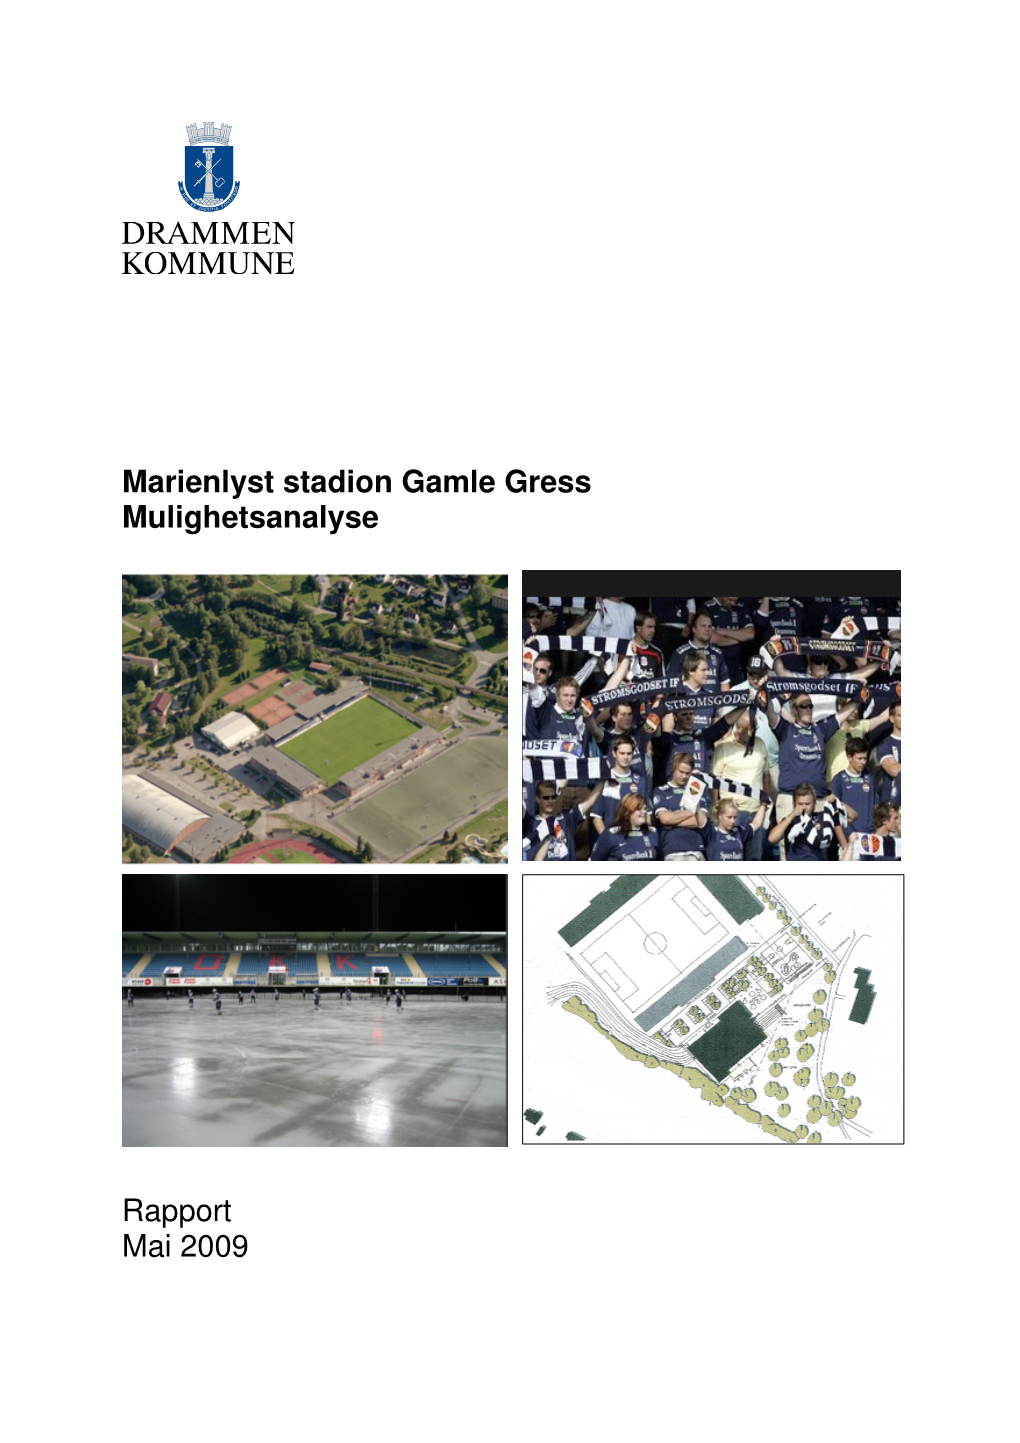 Marienlyst Stadion Gamle Gress Mulighetsanalyse Rapport Mai 2009